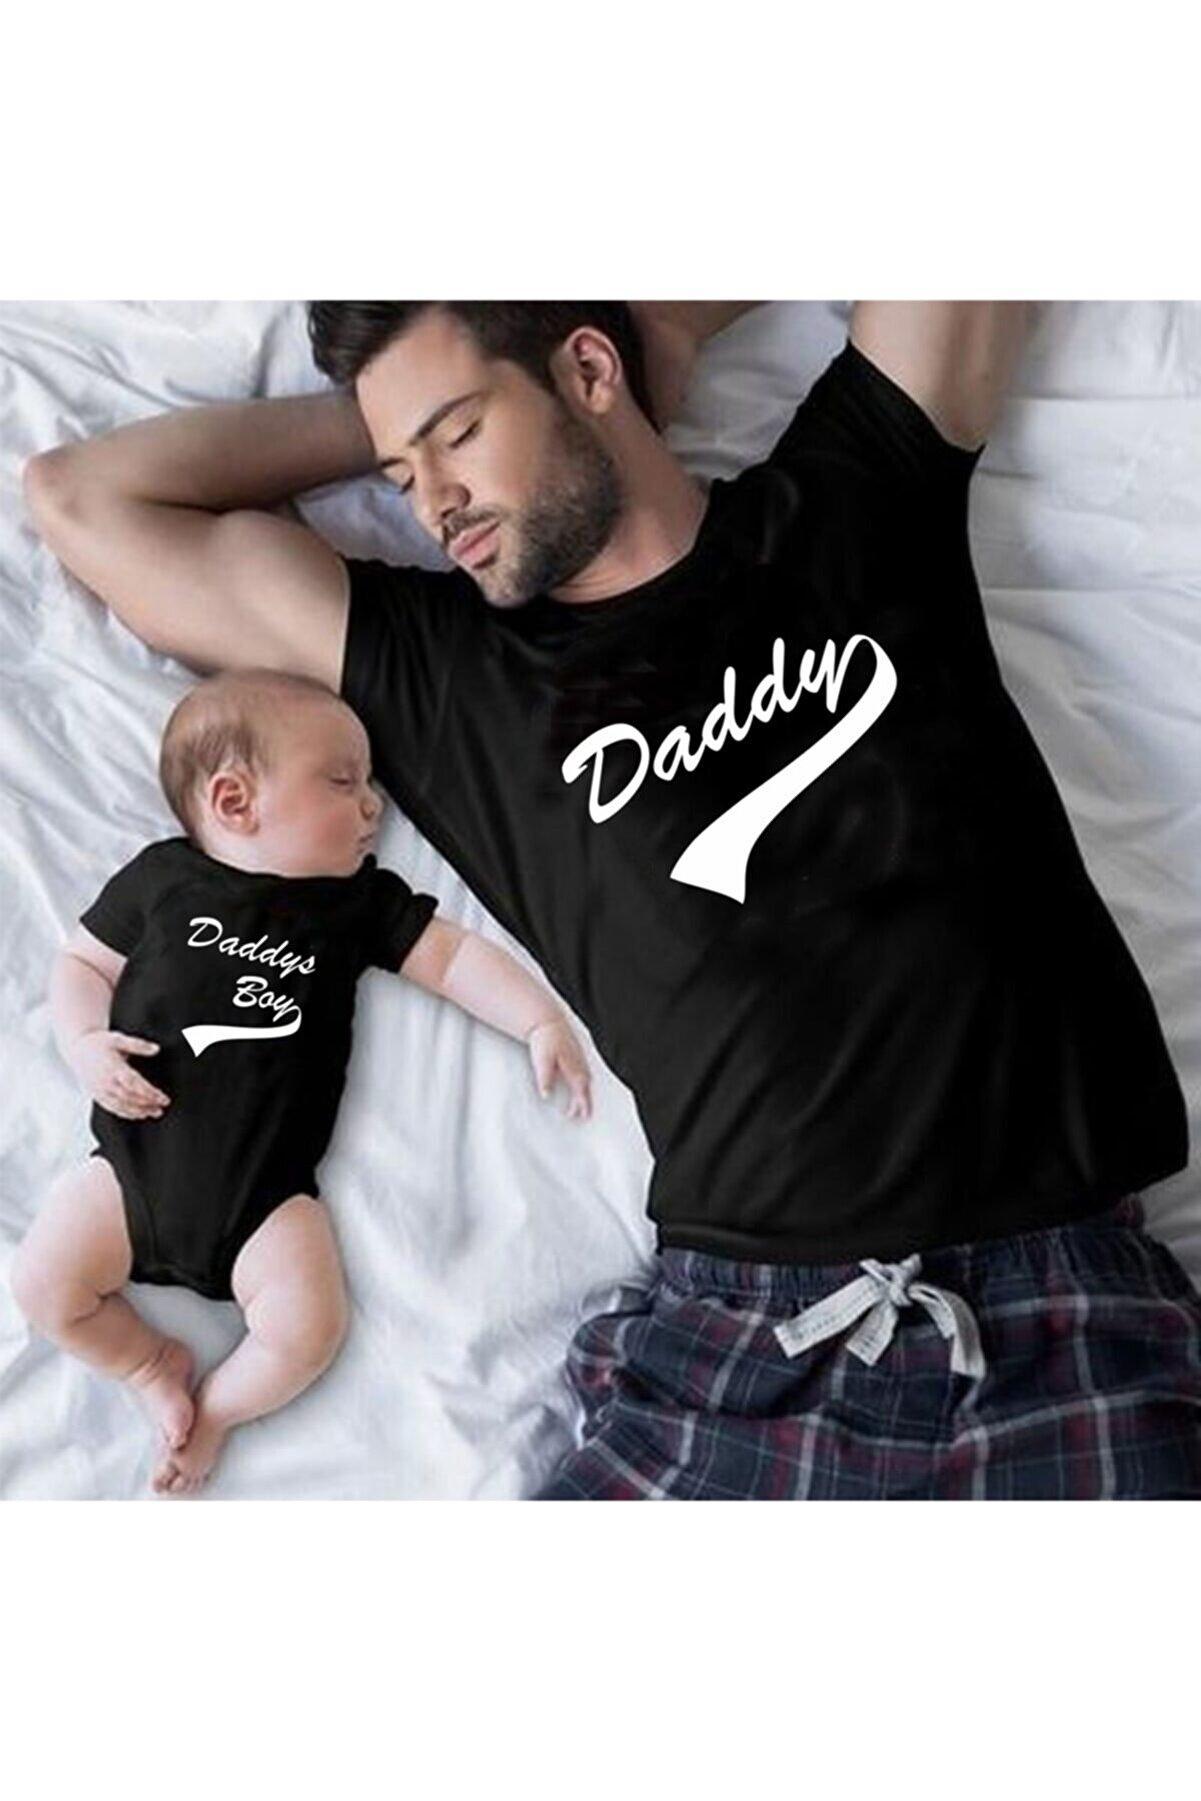 Daddy Daddys Boy Baba Oğul Kız Tshirt(Tek Ürün Fiyatıdır Kombin Yapmak için 2 Adet Sepete Ekleyiniz)